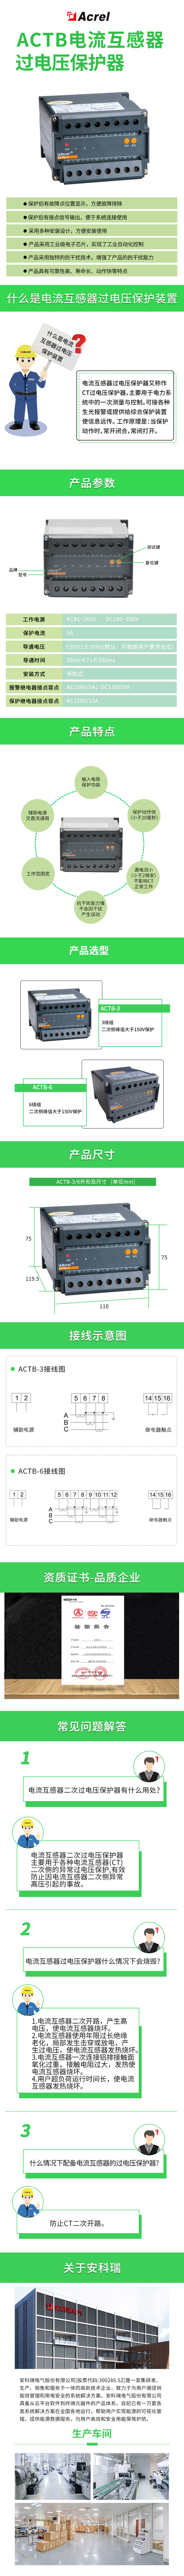 安科瑞ACTB-3电流互感器过压保护器三绕组二次测峰